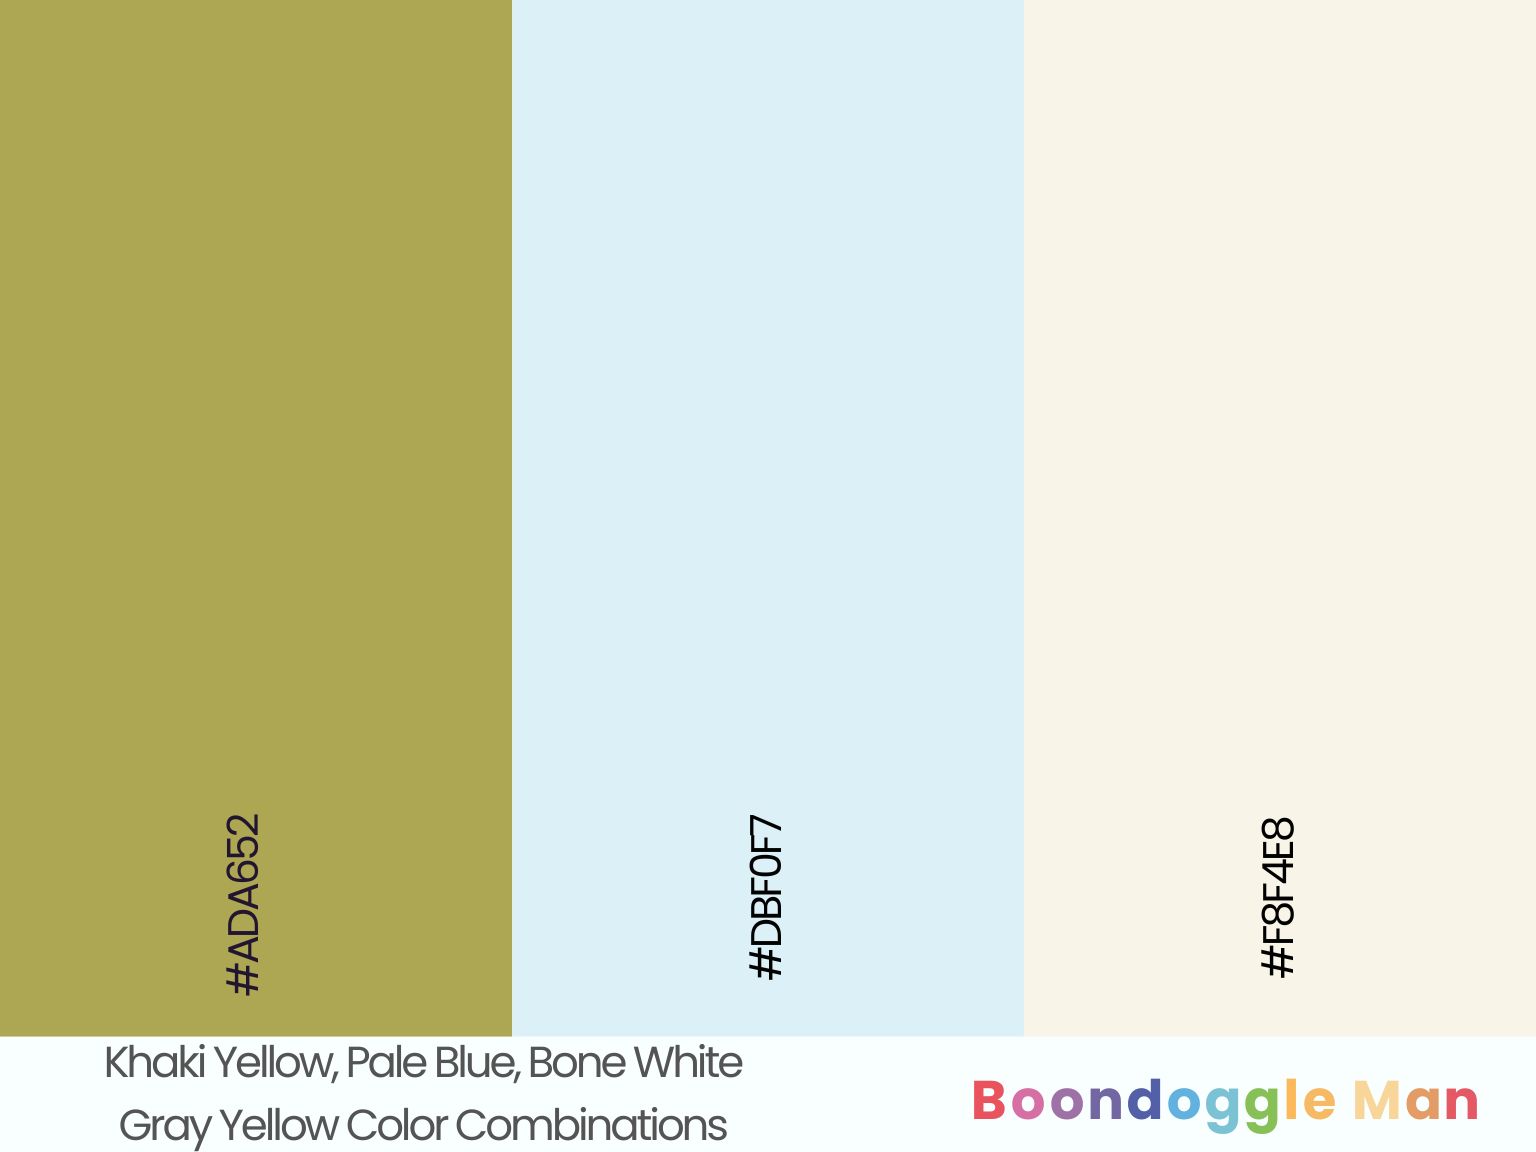 Khaki Yellow, Pale Blue, Bone White